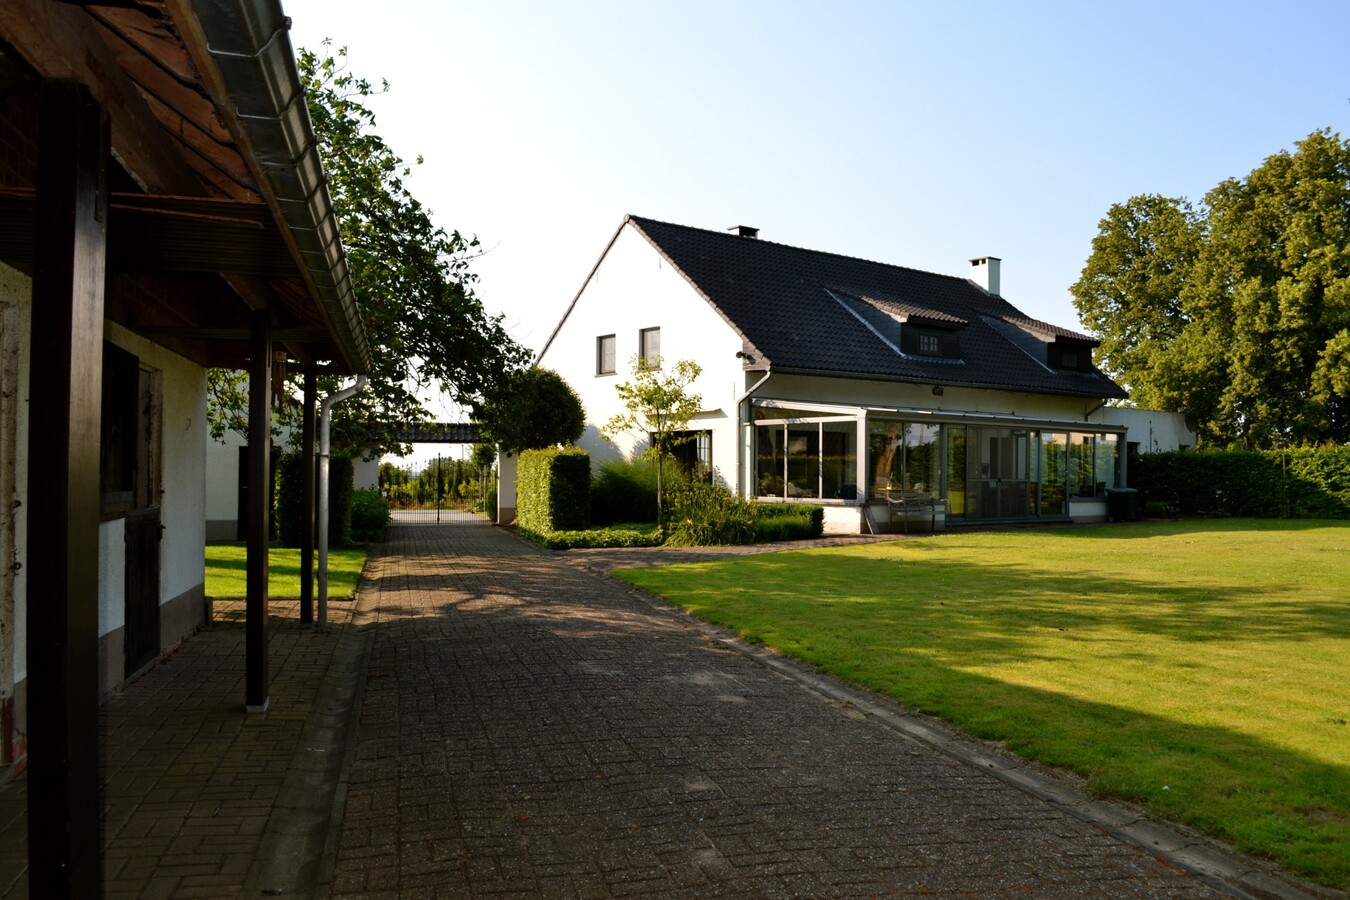 Property sold in Scherpenheuvel